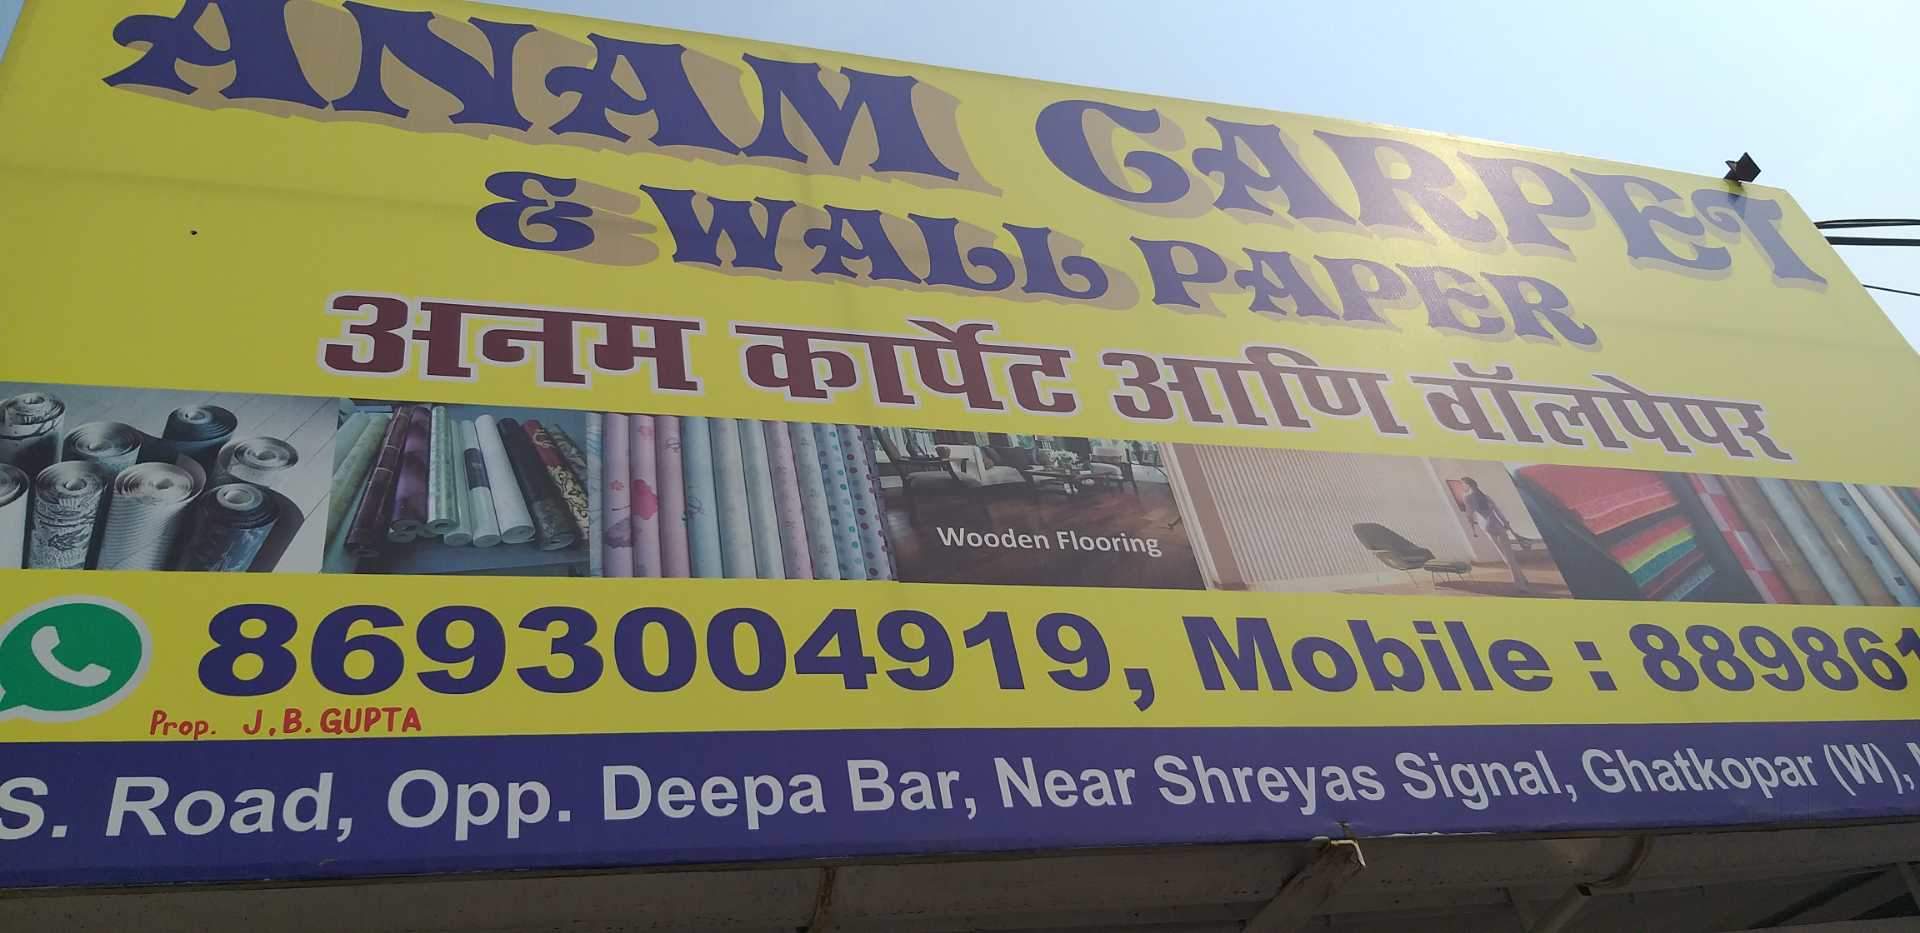 Anam Carpet & Wallpaper Ghatkopar West Wall Paper Dealers - Banner , HD Wallpaper & Backgrounds